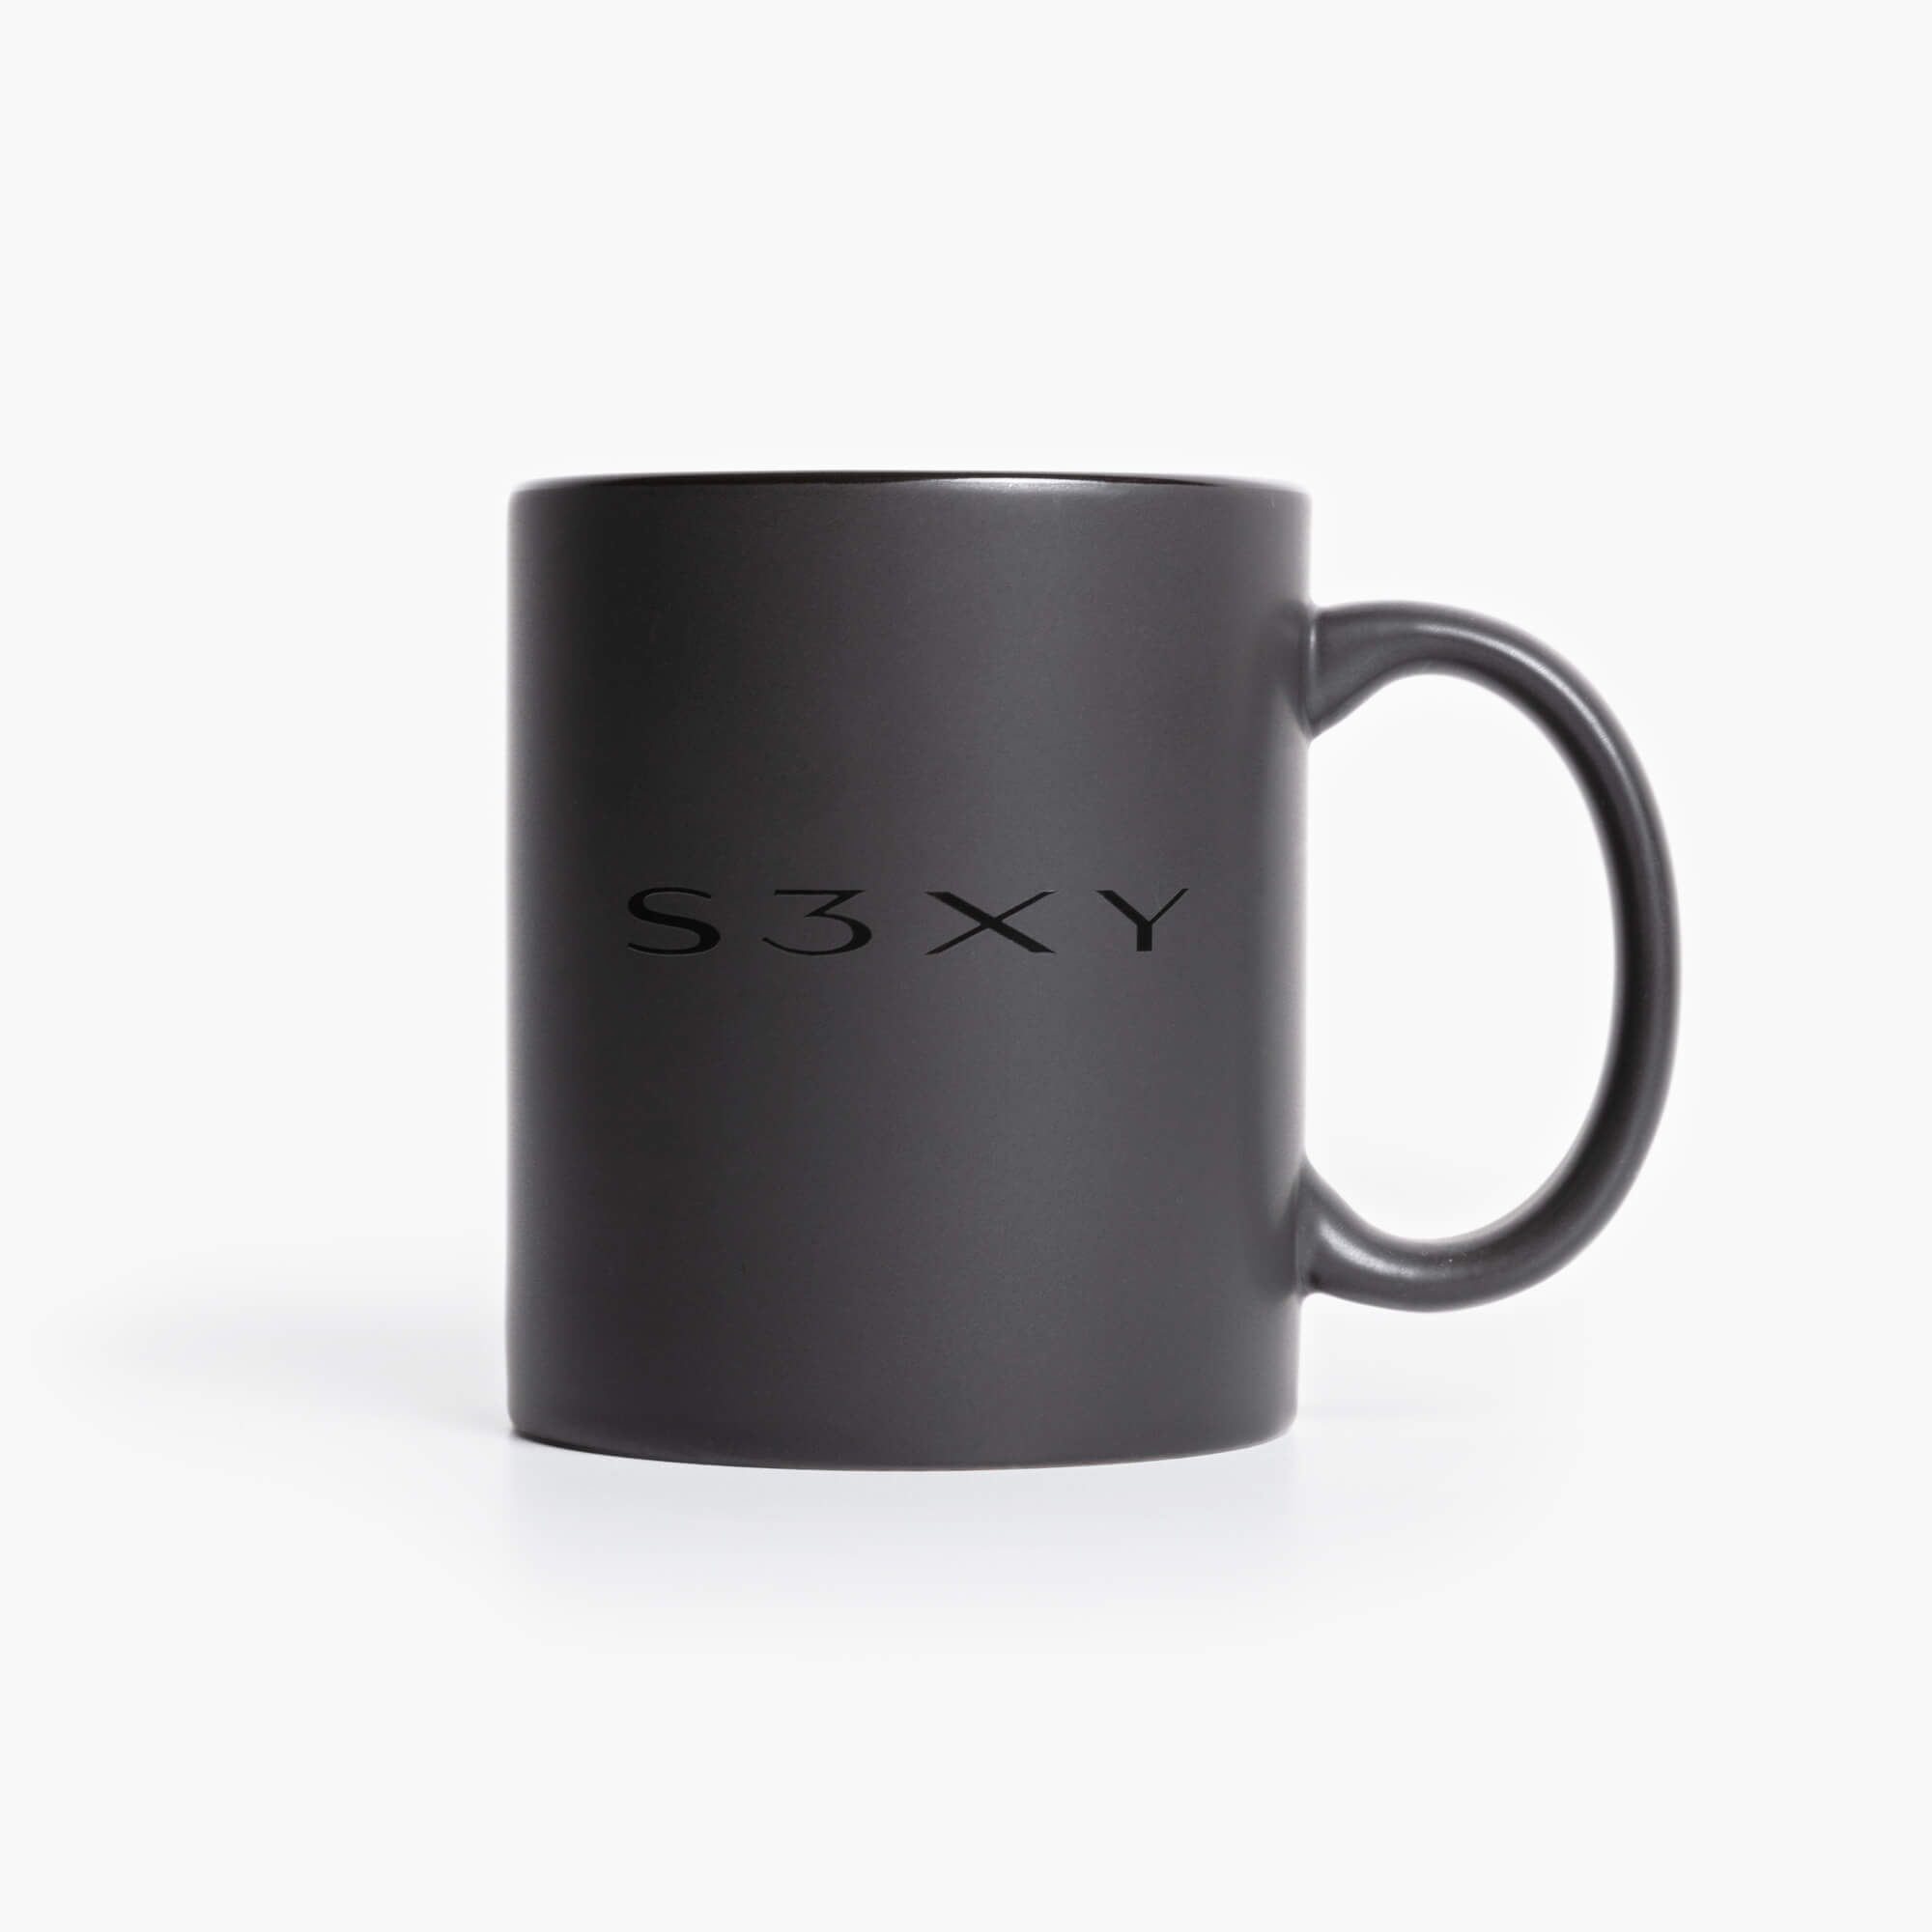 S3XY Mug